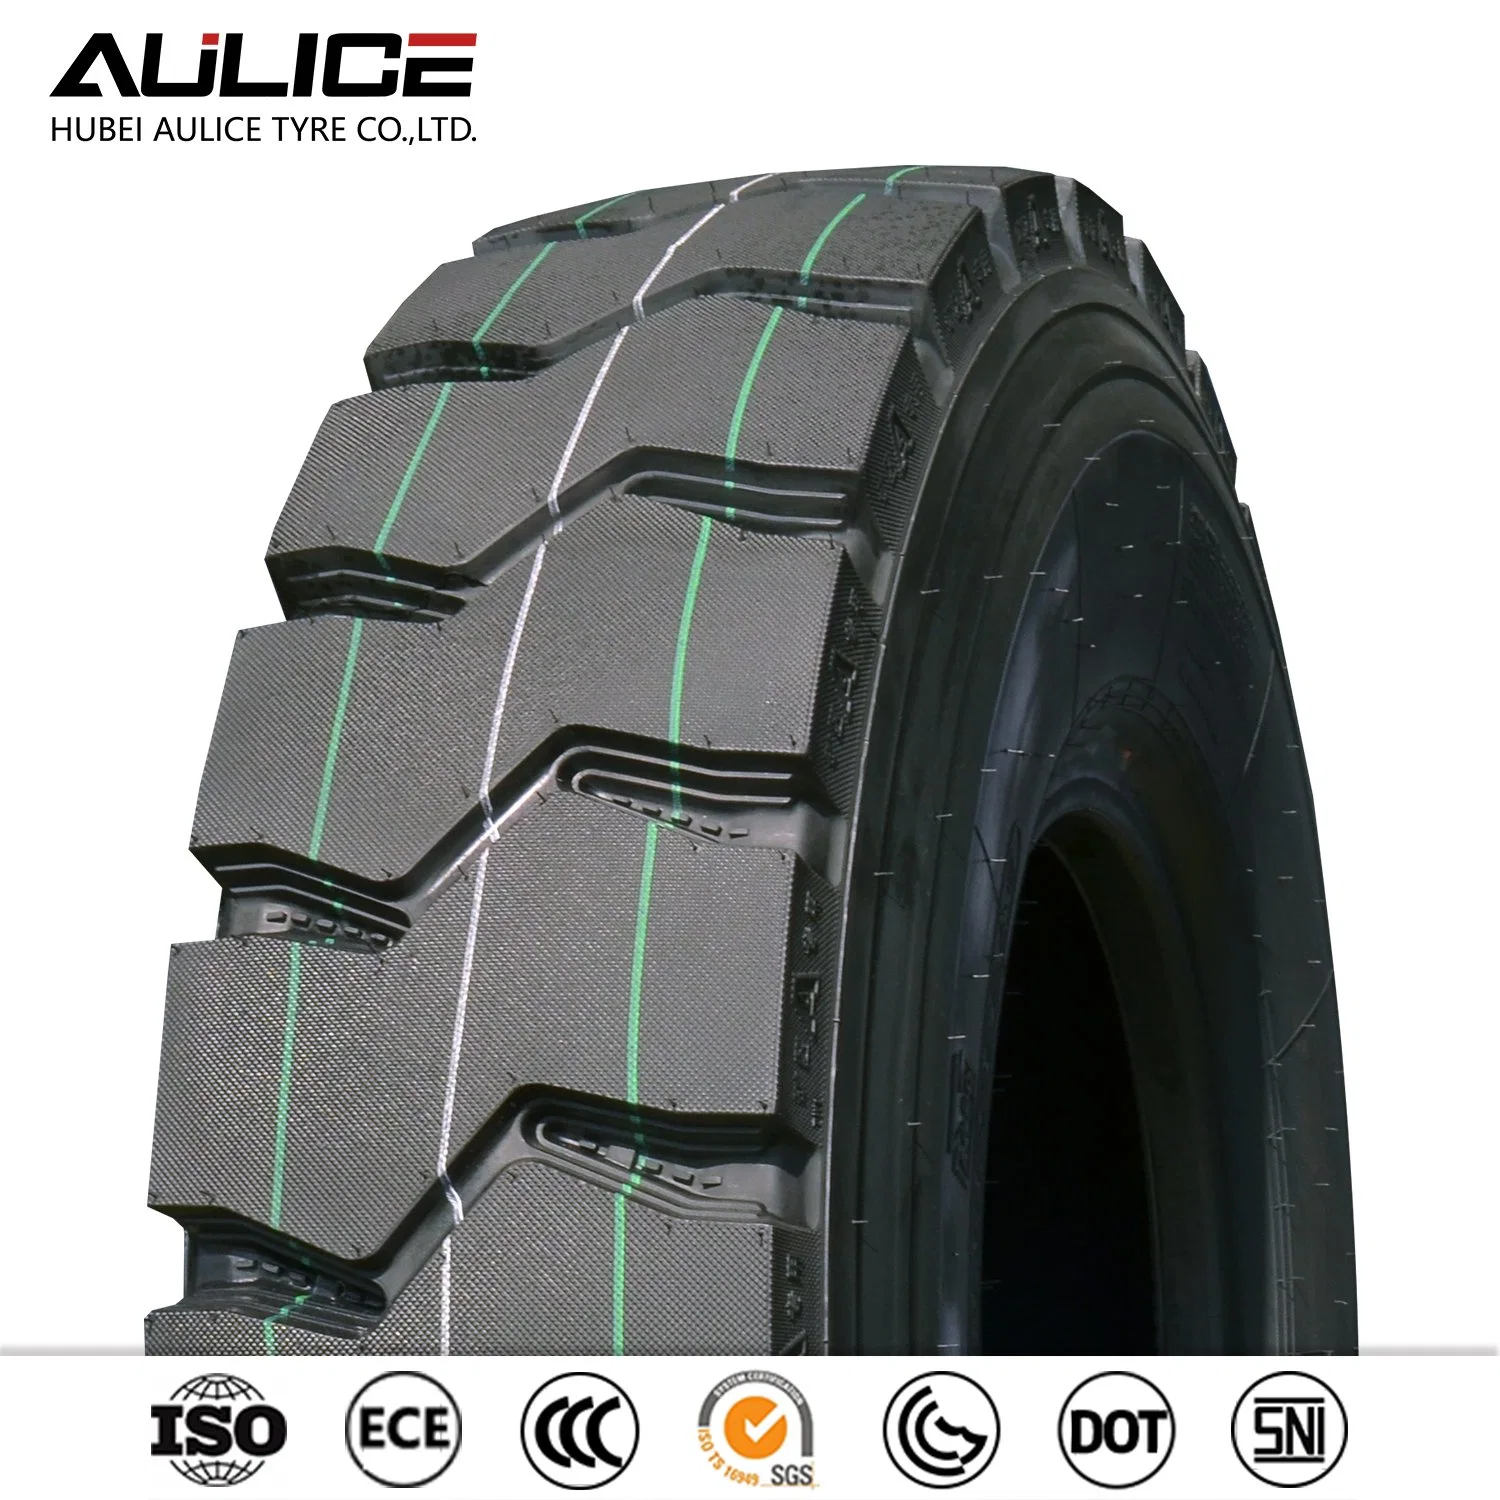 Tous les 20 pouces de l'acier des pneus pour camions et autobus Radial/ pneu d'exploitation minière/ pneu TBR(AR5157A+ 12.00R20) avec une superbe résistance d'usure et la surcharge de la capacité du fabricant